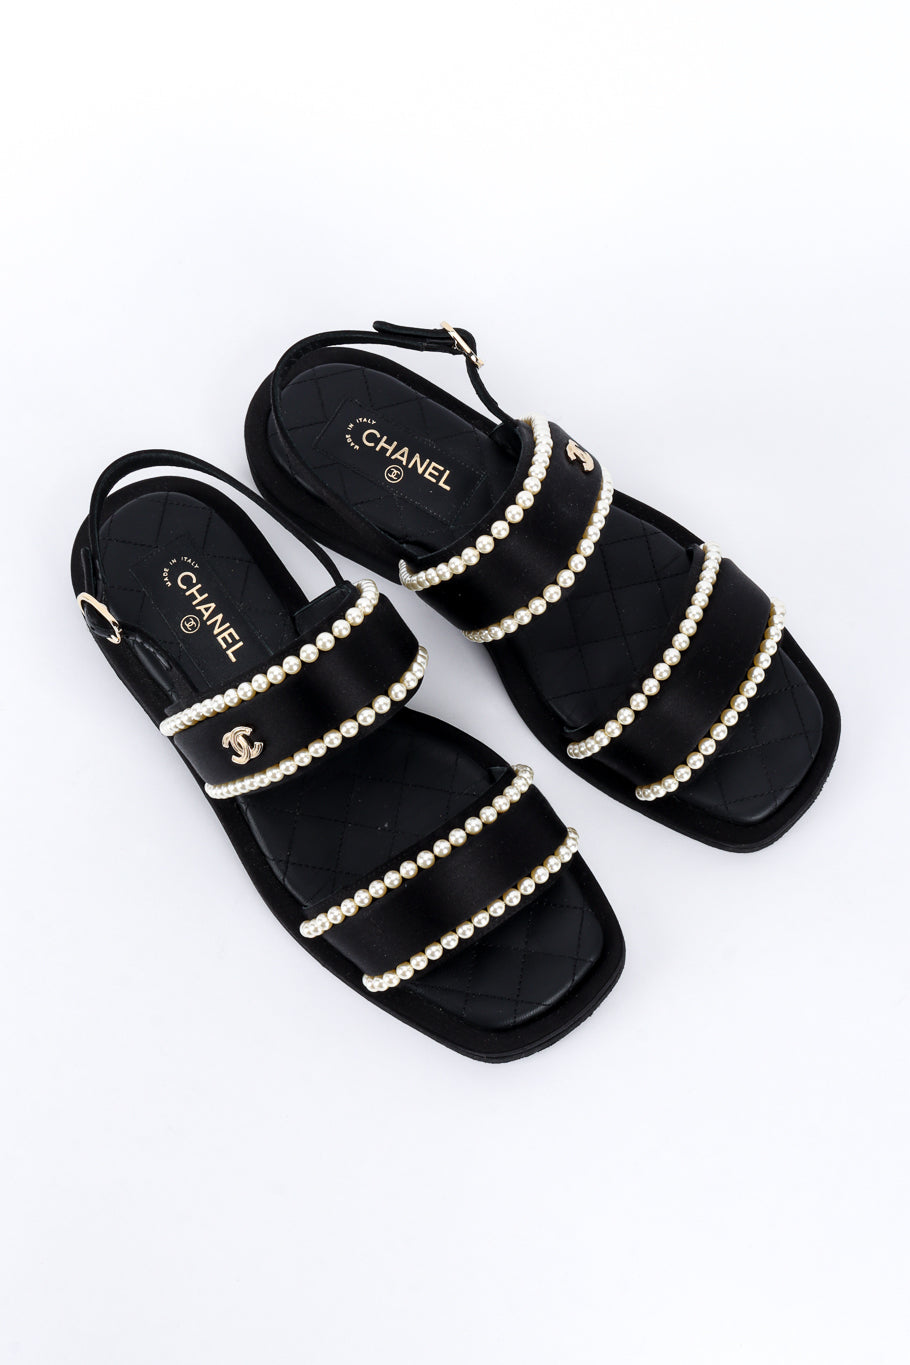 Chanel CC Satin & Pearl Sandals top view @recess la